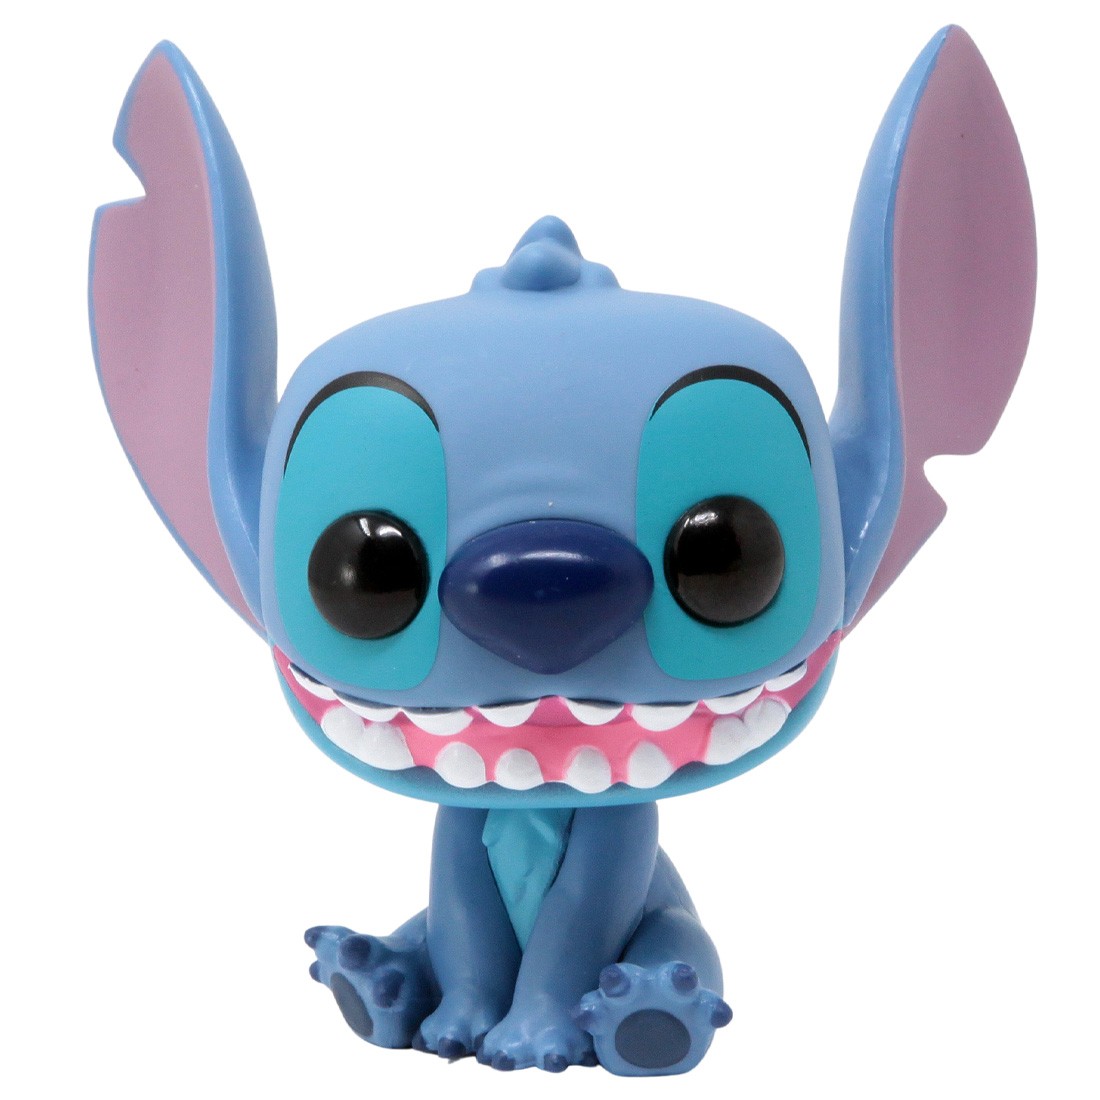 Disney Pop It! - Stitch –